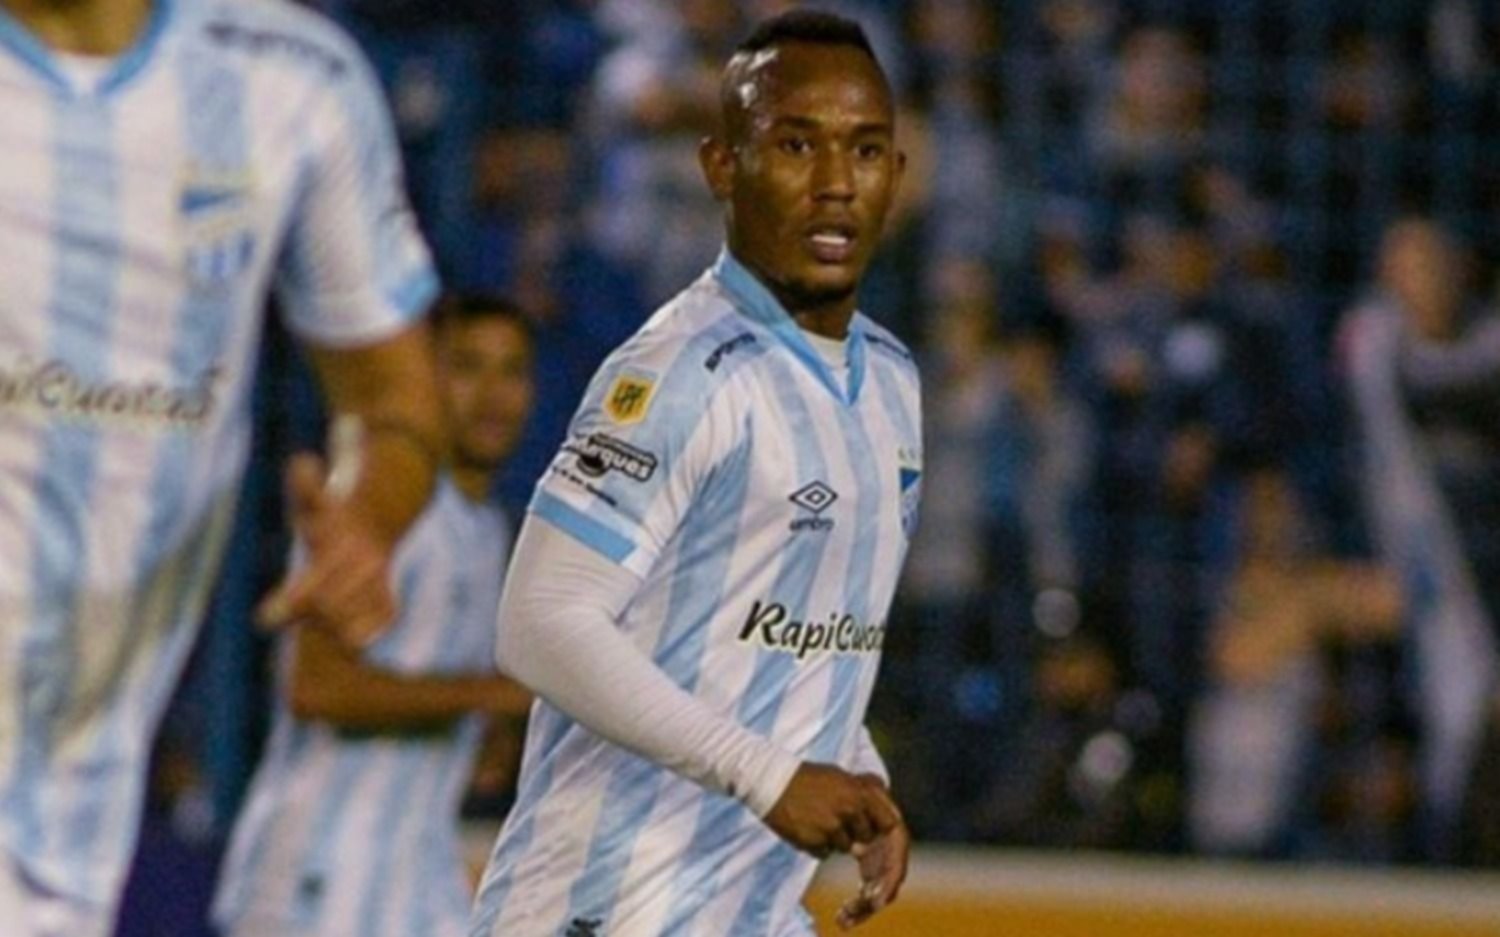 Otra tragedia sacude al fútbol argentino: murió un jugador de Atlético Tucumán, en pleno entrenamiento